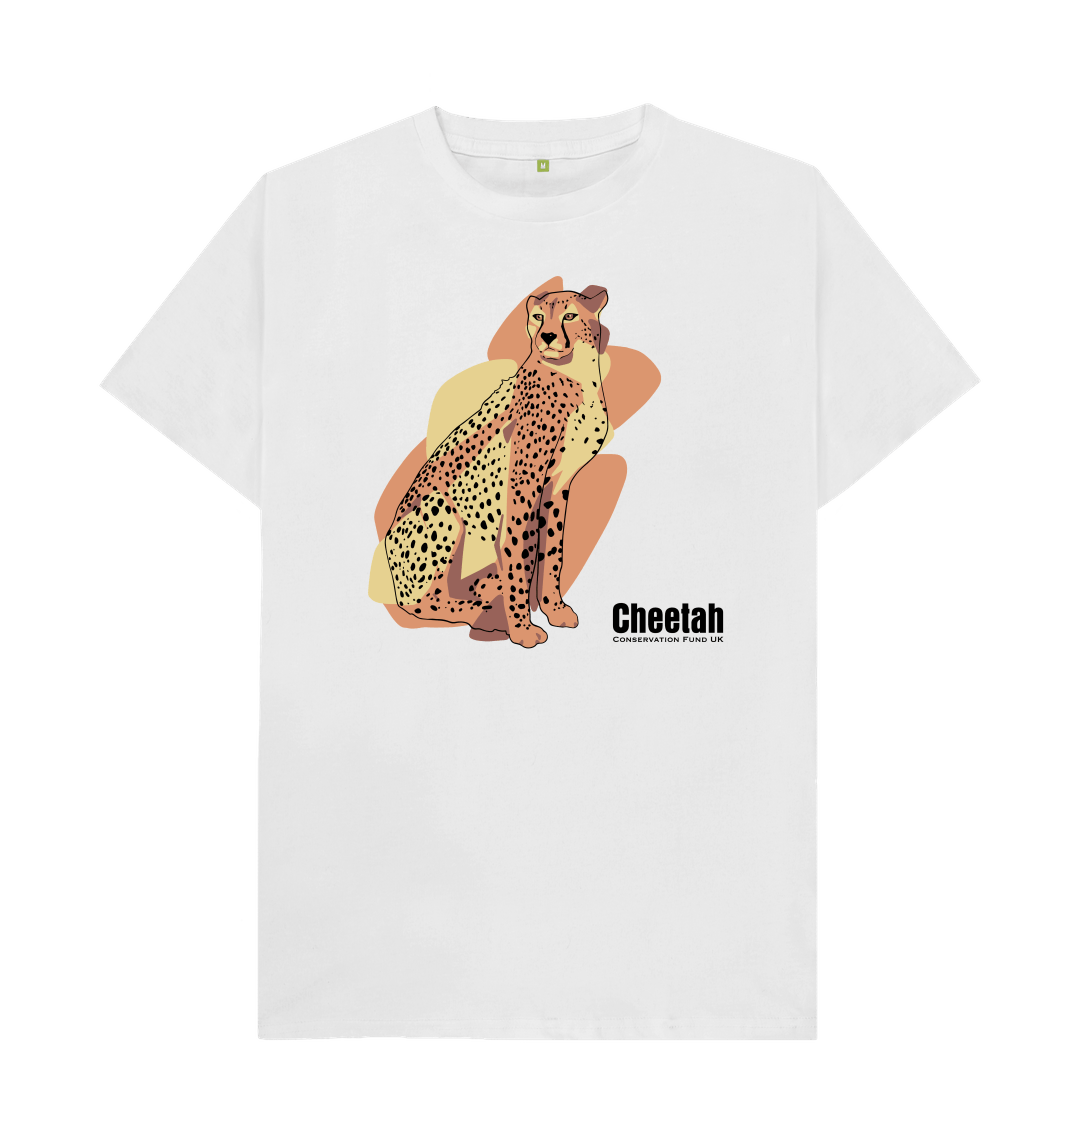 A cheetah glance mens t-shirt by The Dandelion Art